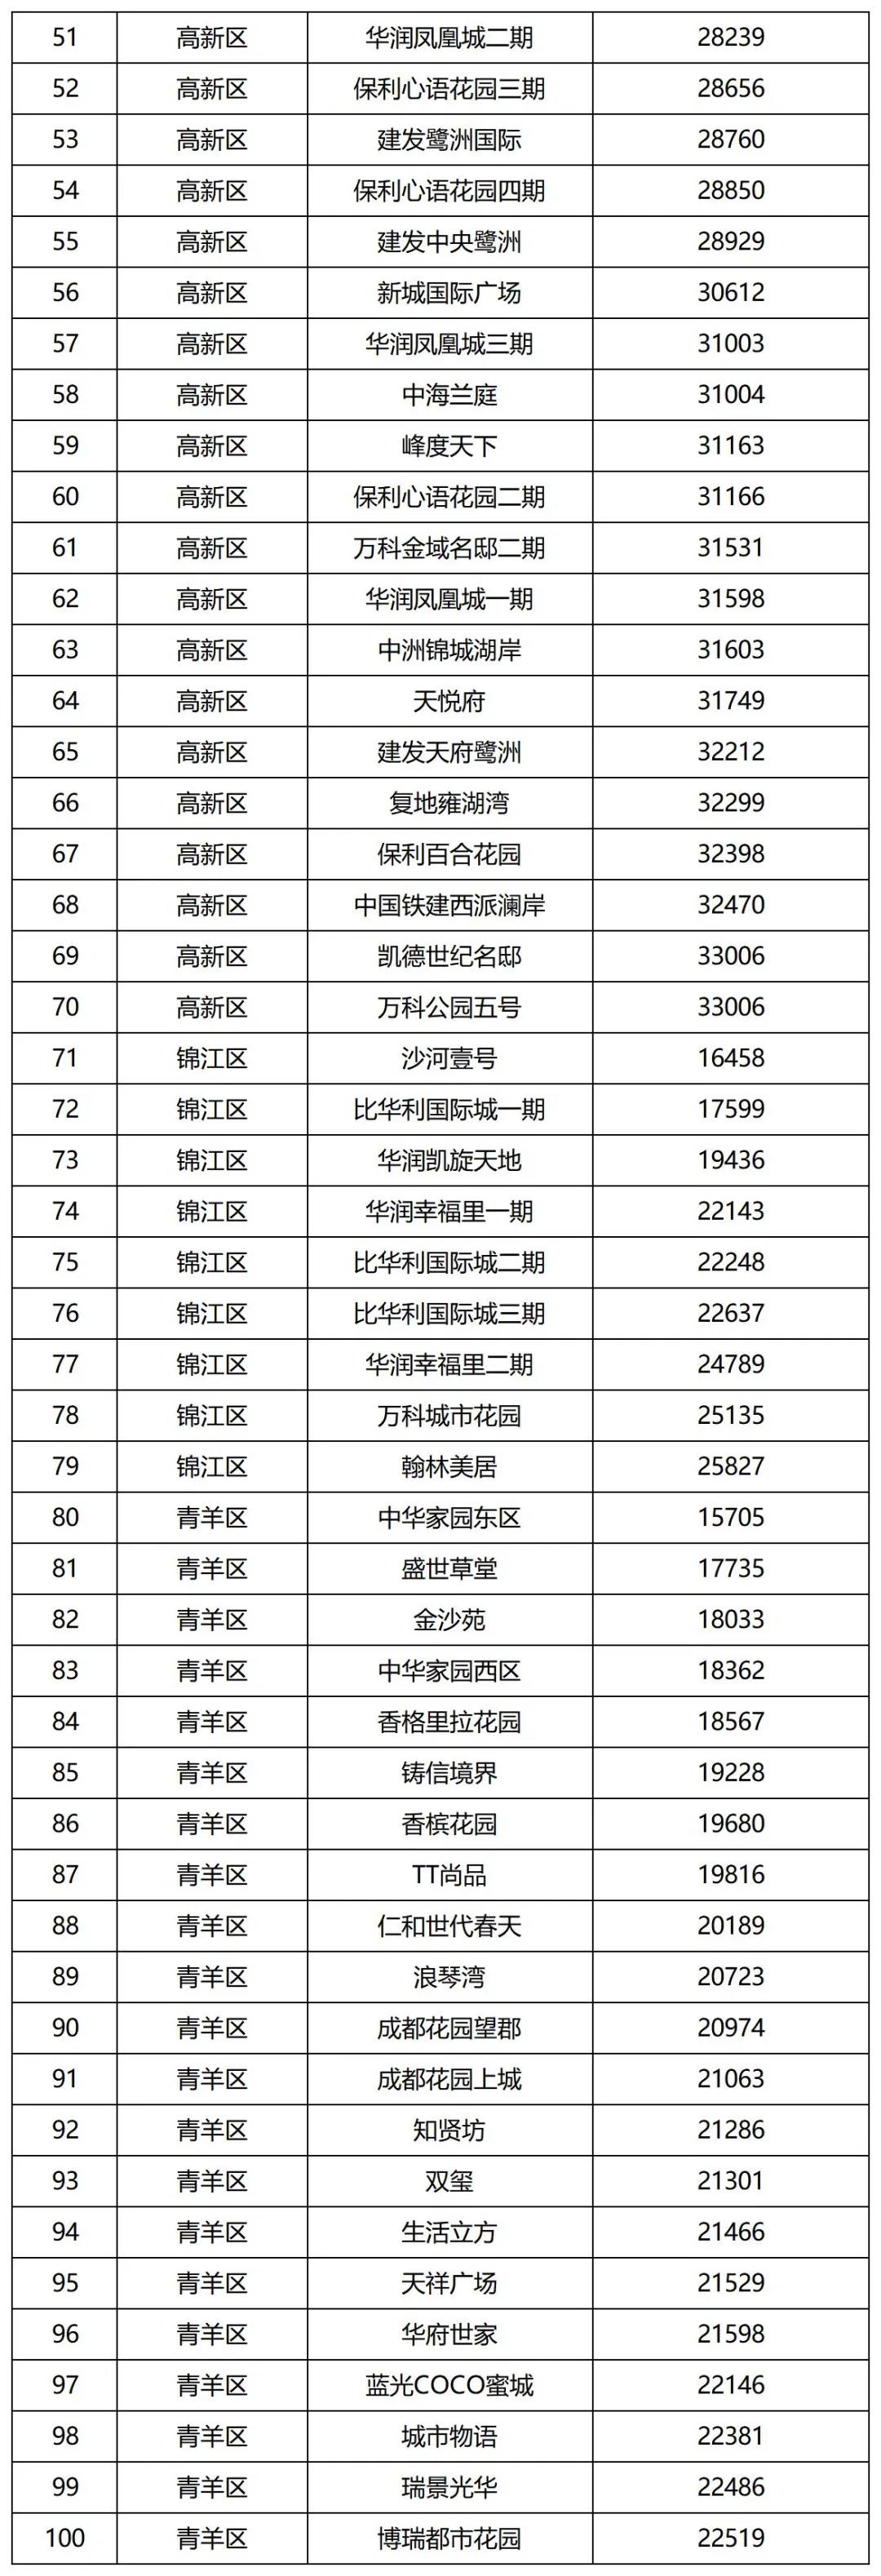 成都發佈第二批住宅小區二手房成交參考價 涉及286個小區中國網地産